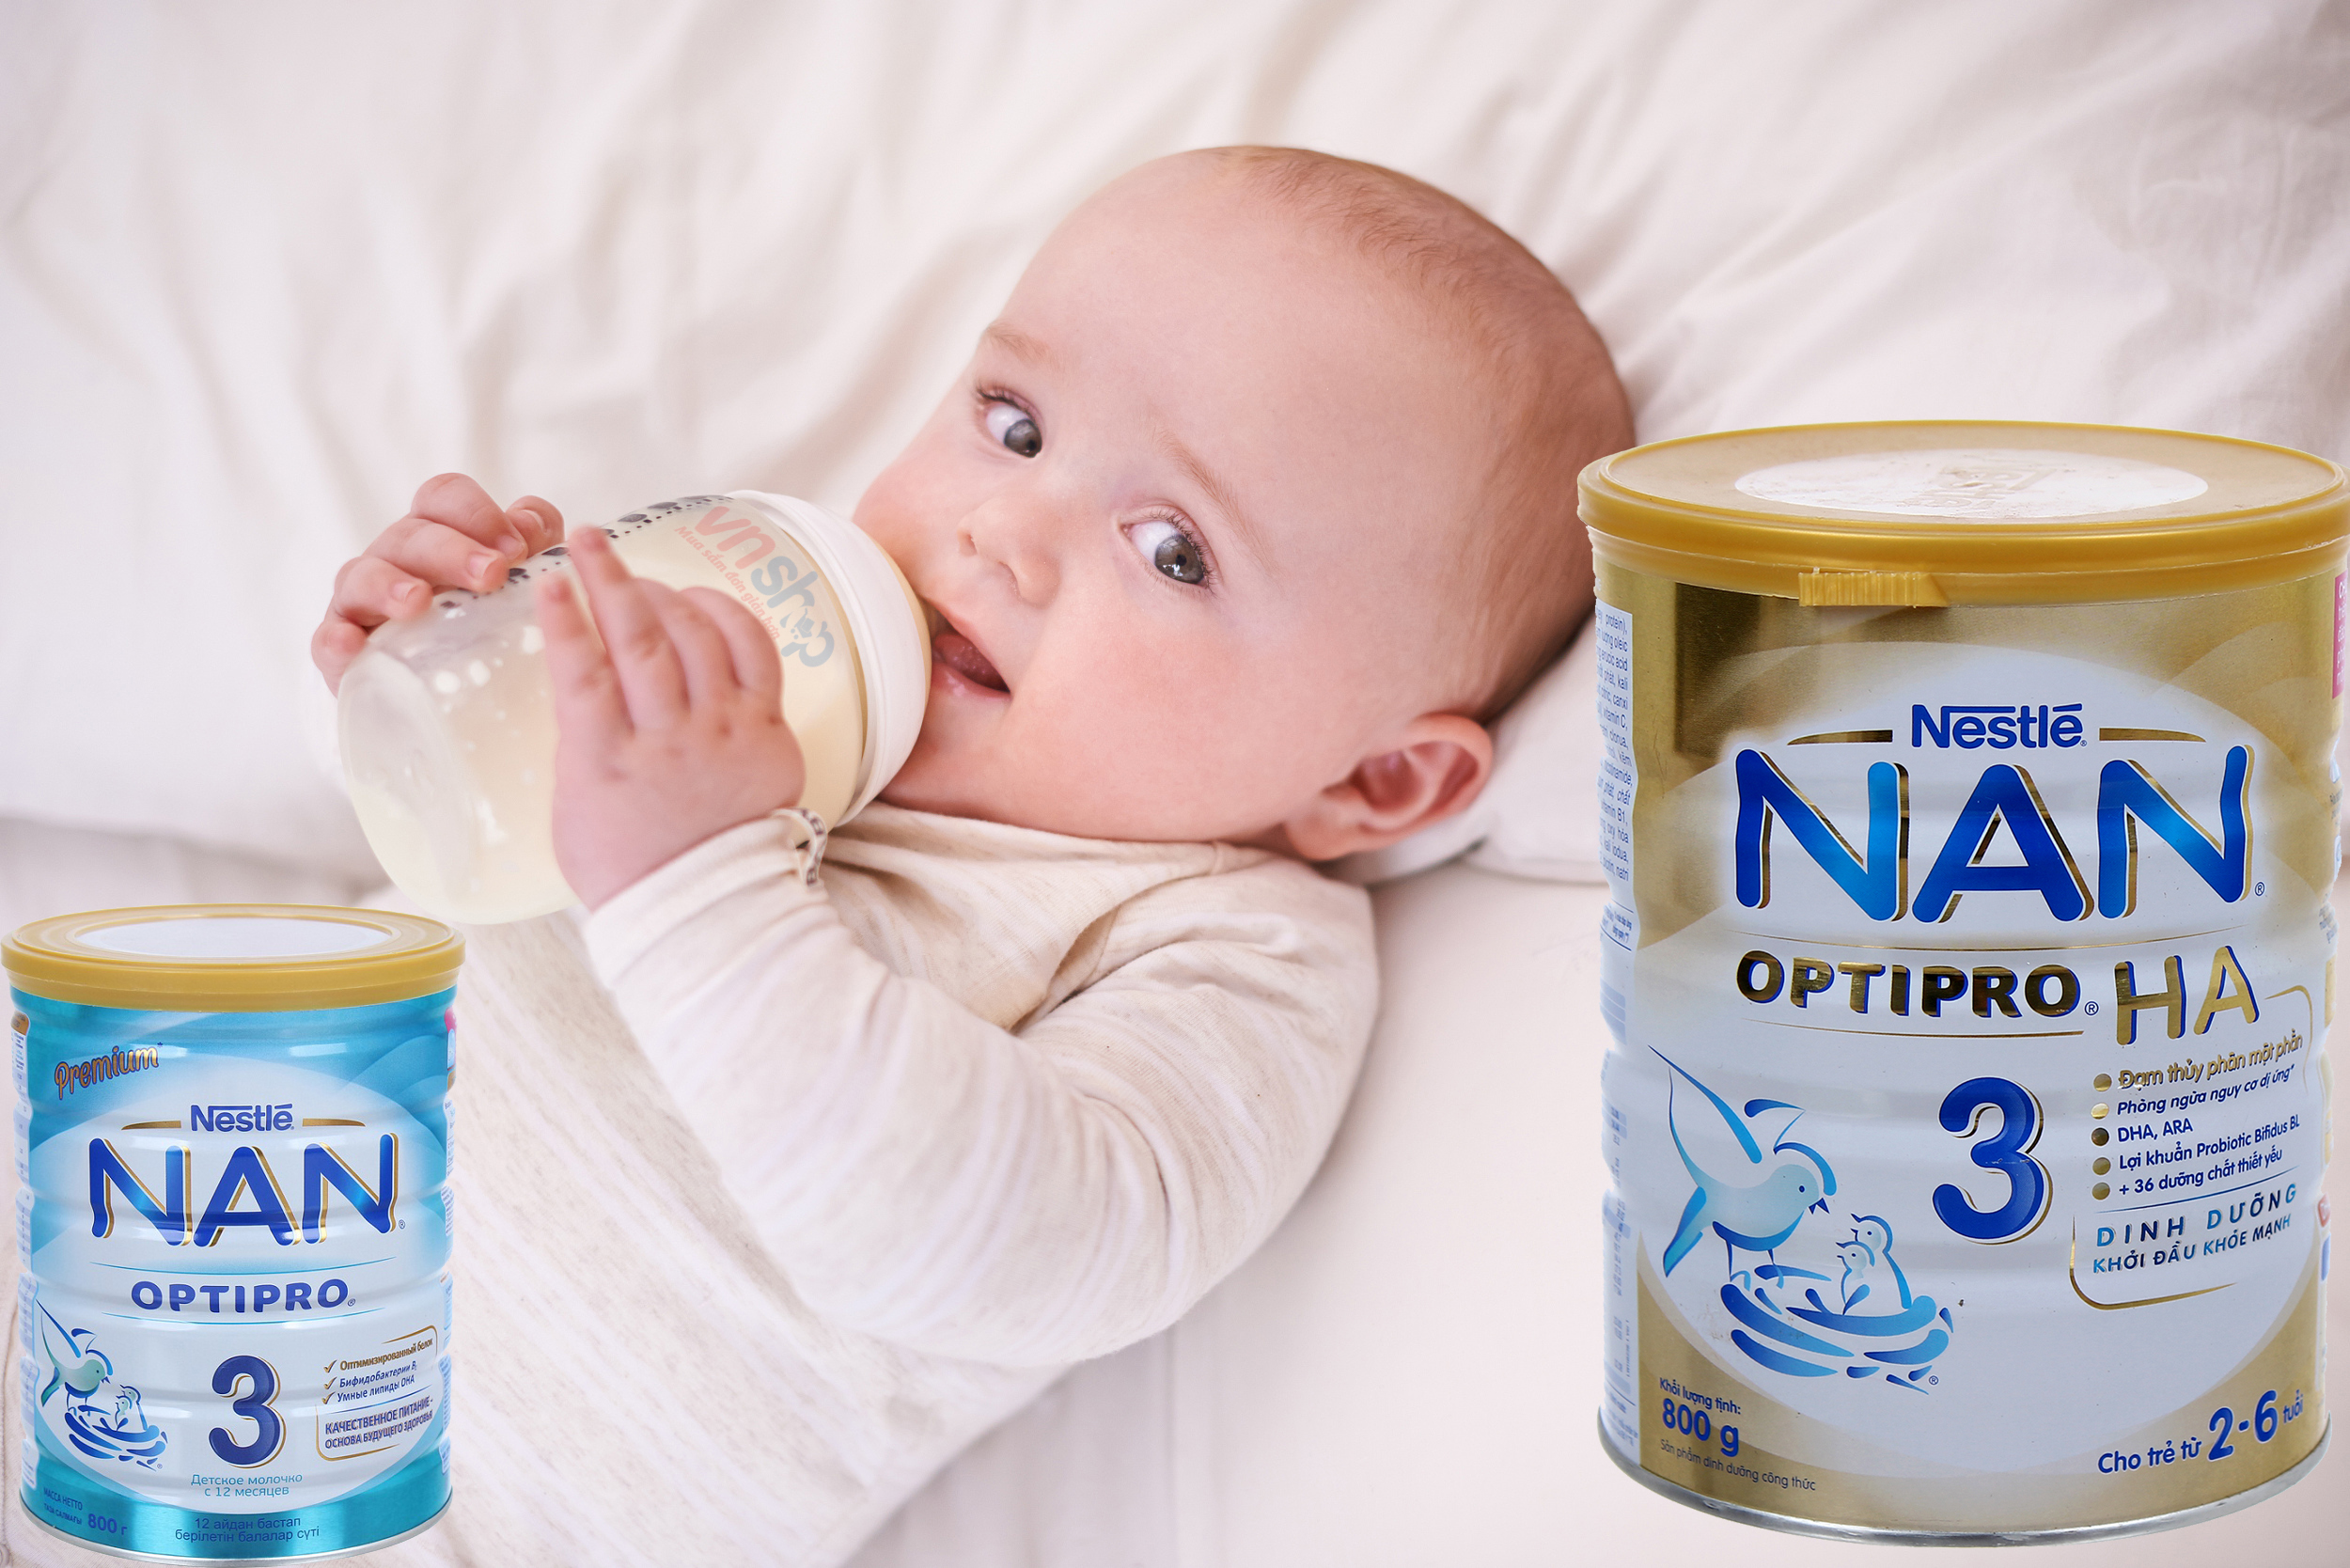 Sữa Nan Nga có tăng cân không - Những điều cần biết khi lựa chọn sữa Nan cho trẻ em